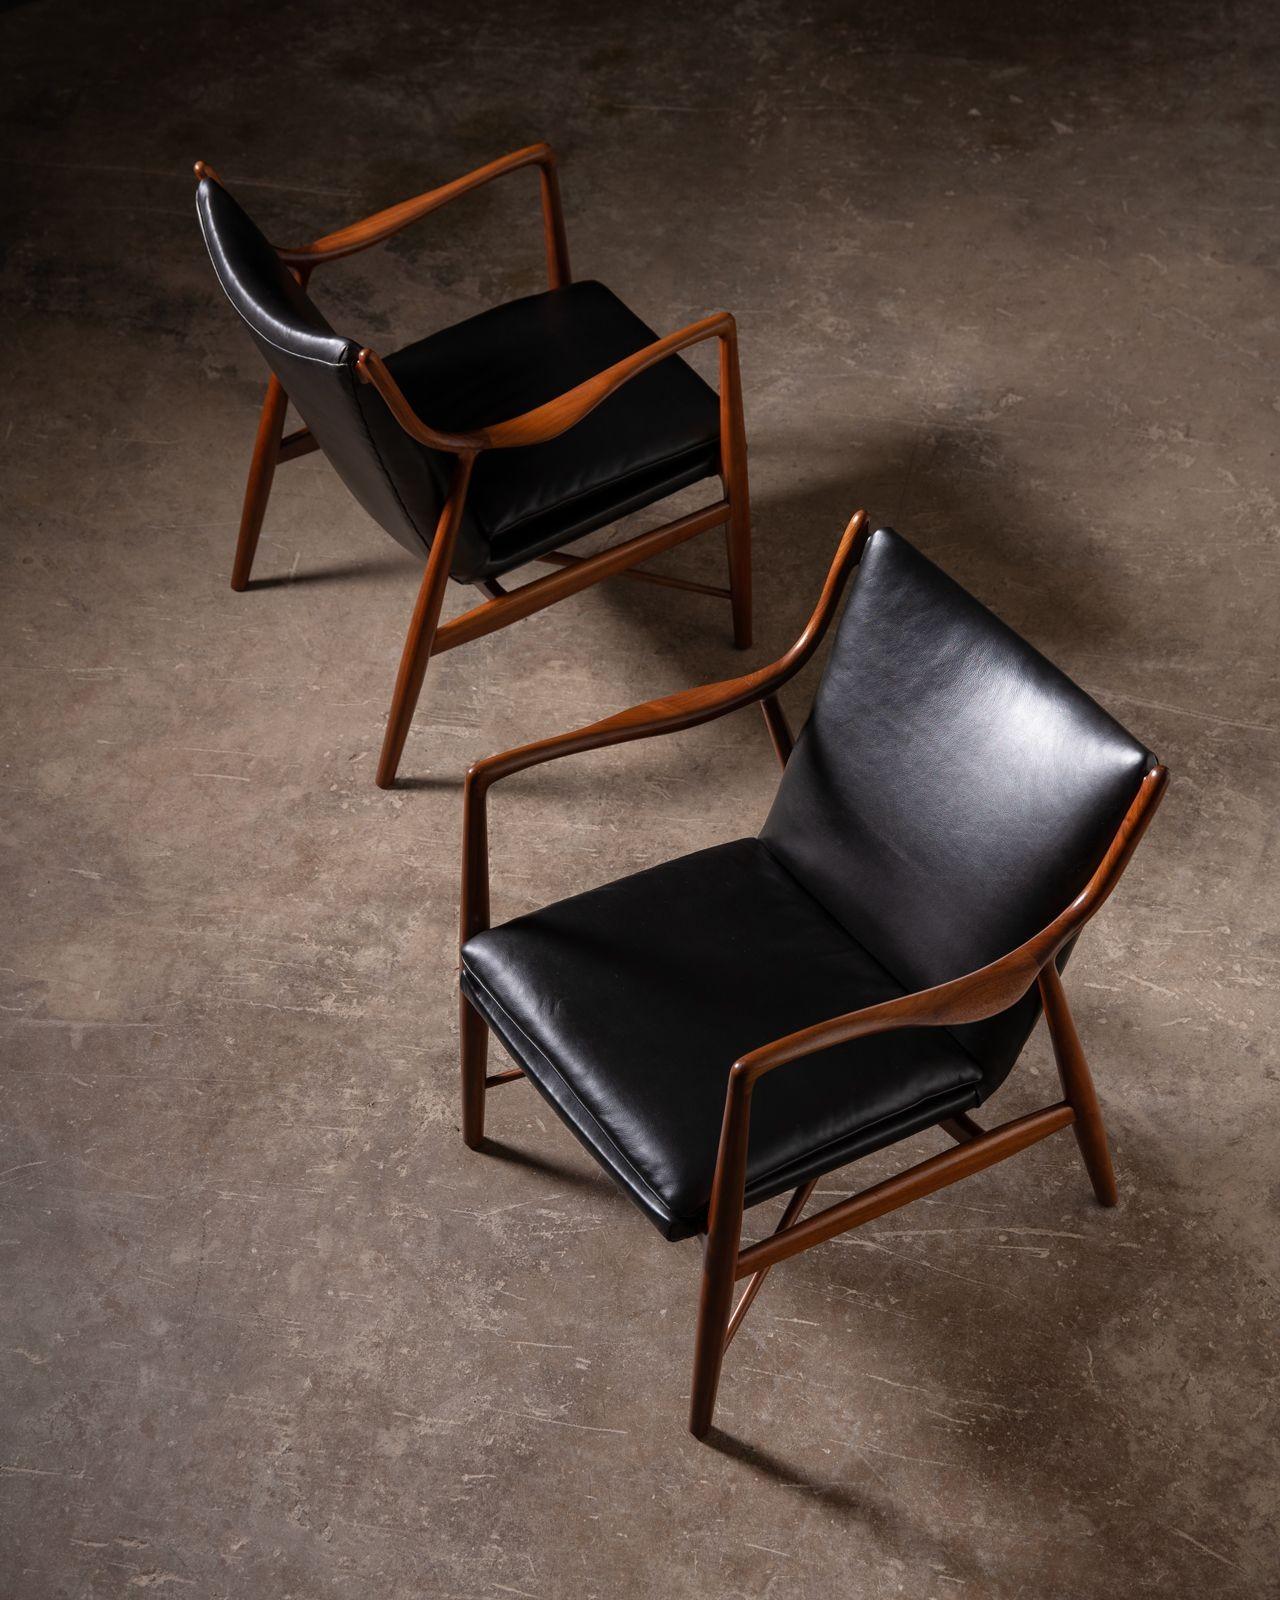 Scandinavian Modern Finn Juhl NV-45 Scandinavian Lounge Chairs in Walnut and Black Leather 1950s For Sale